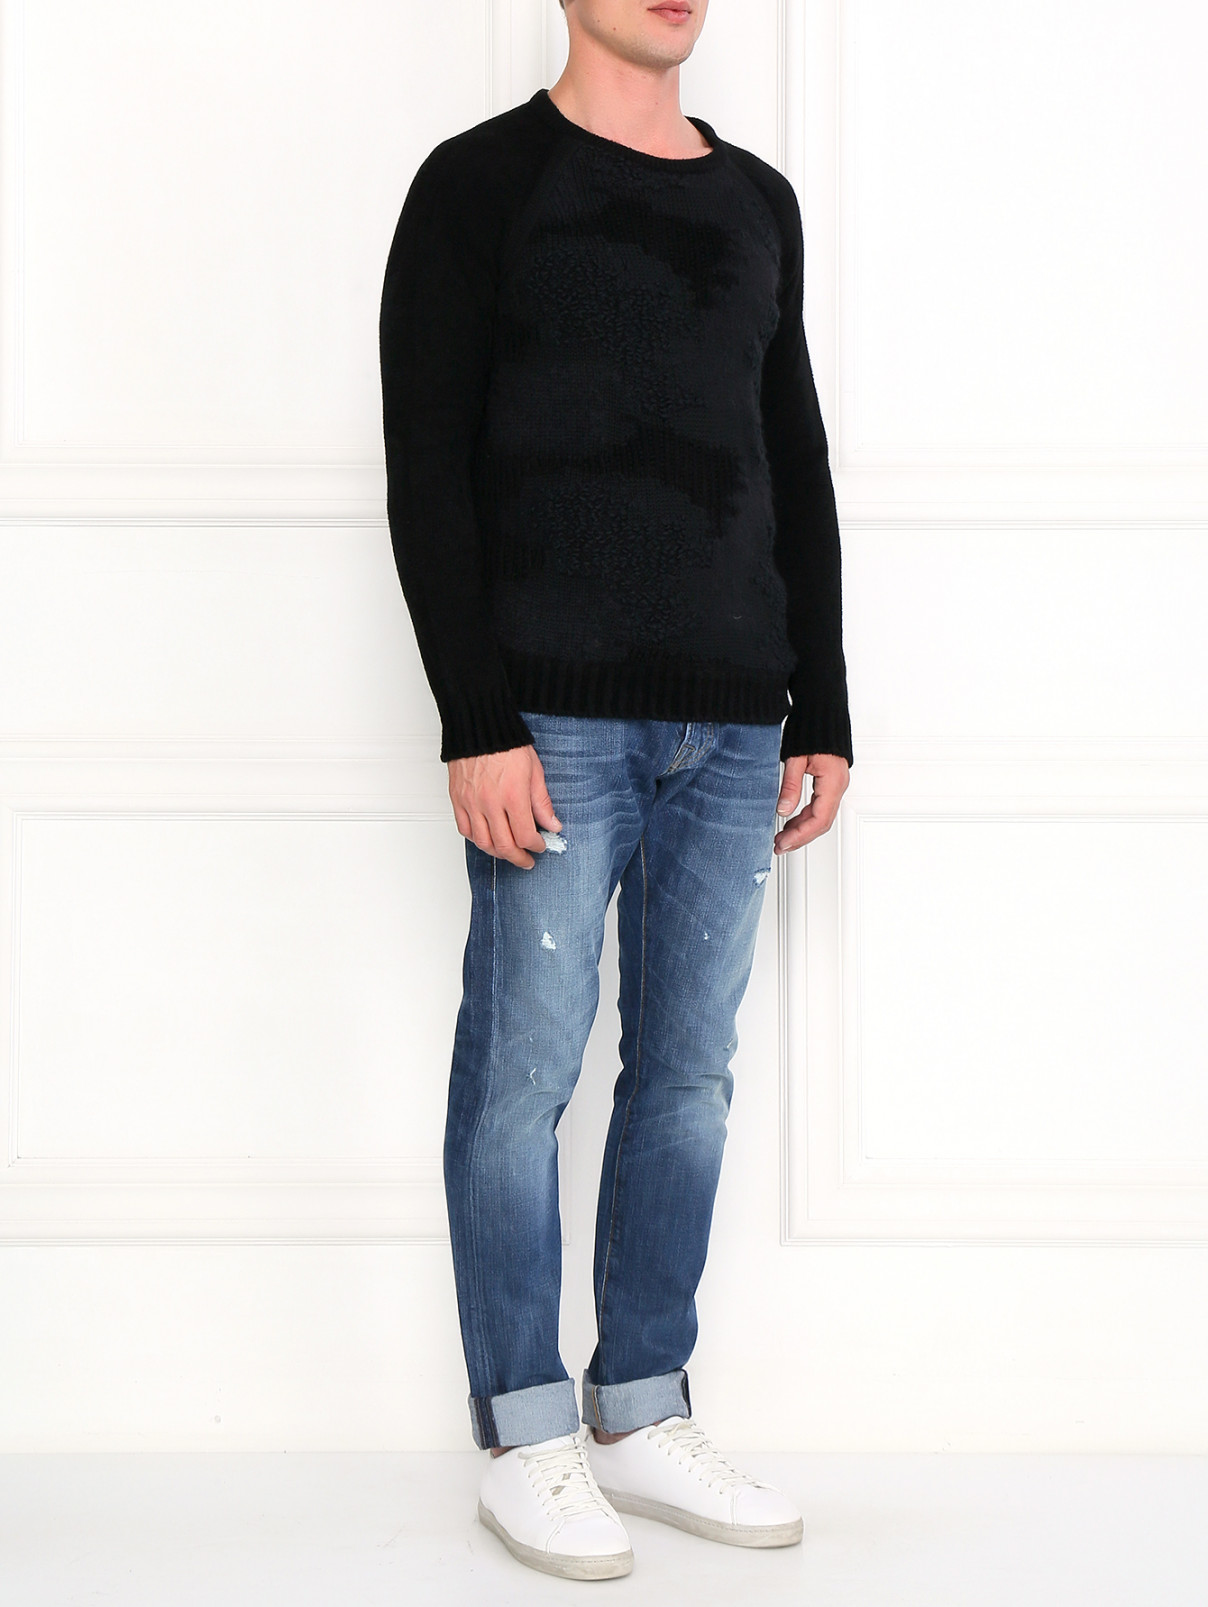 Джемпер из шерсти крупной вязки Jean Paul Gaultier  –  Модель Общий вид  – Цвет:  Черный